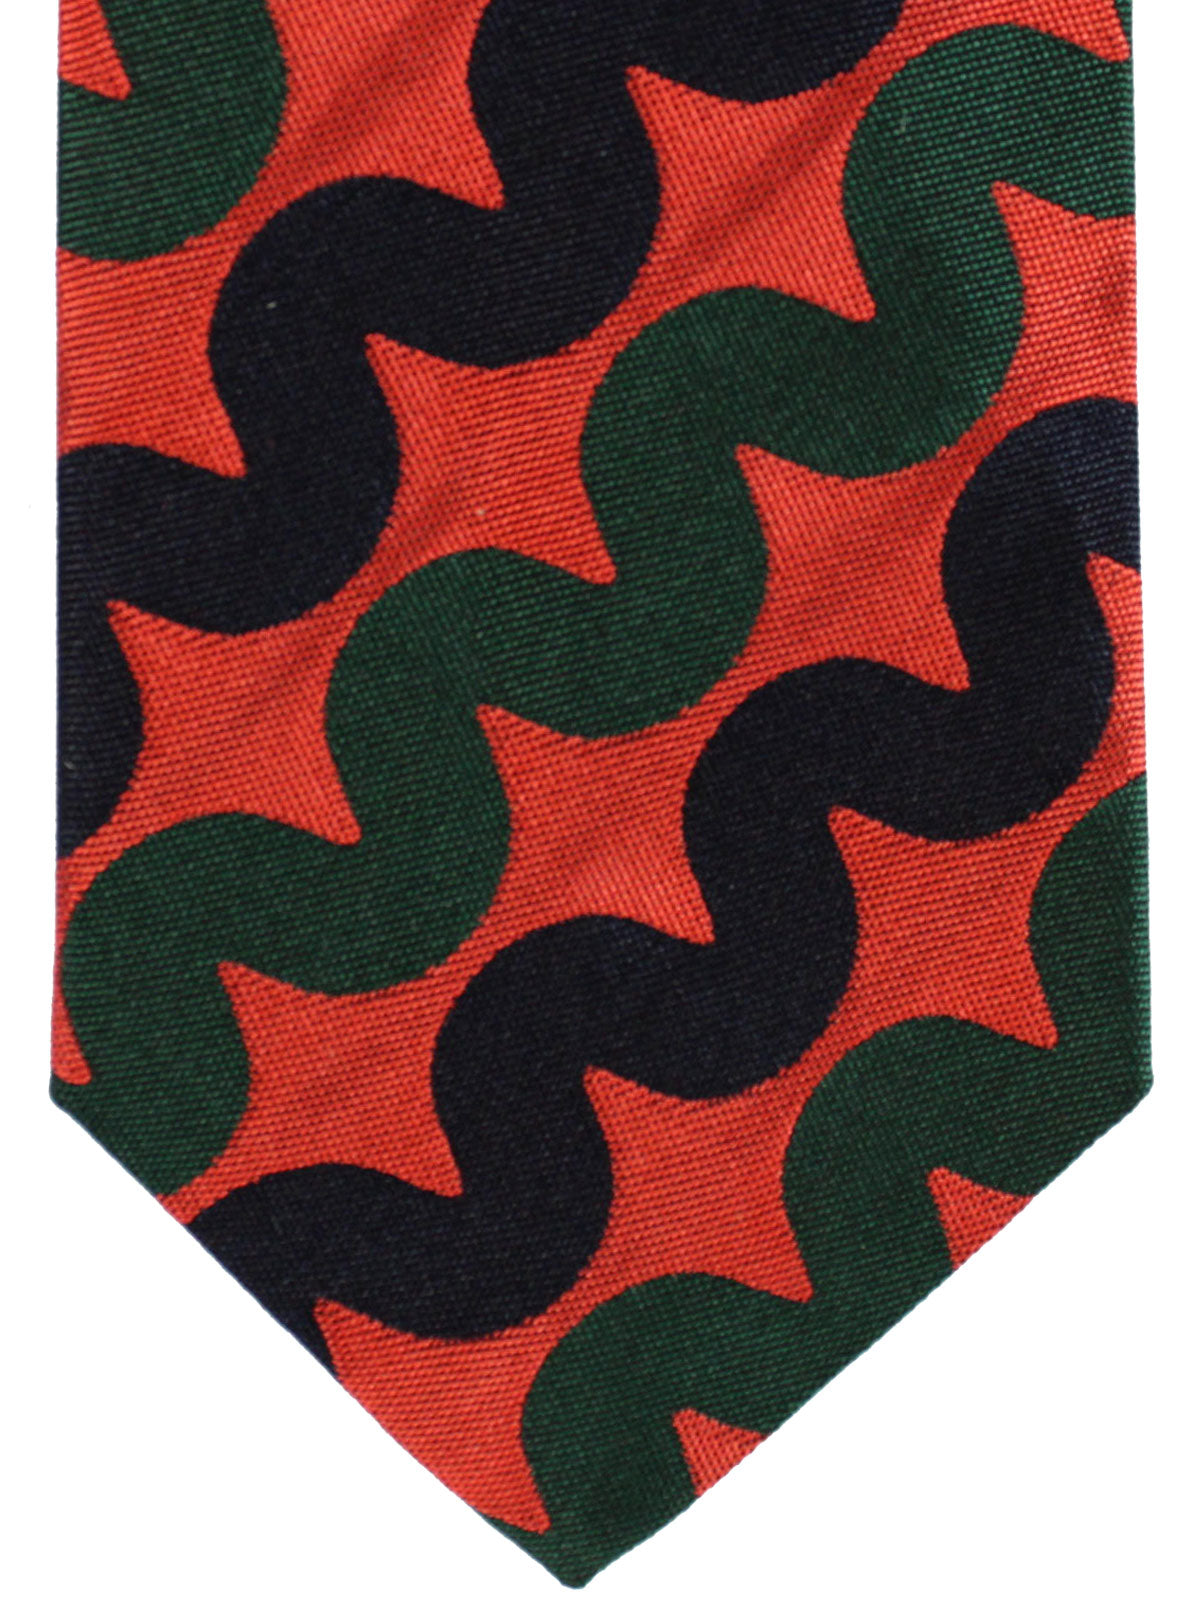 Gene Meyer Silk Tie Orange Green Black Design